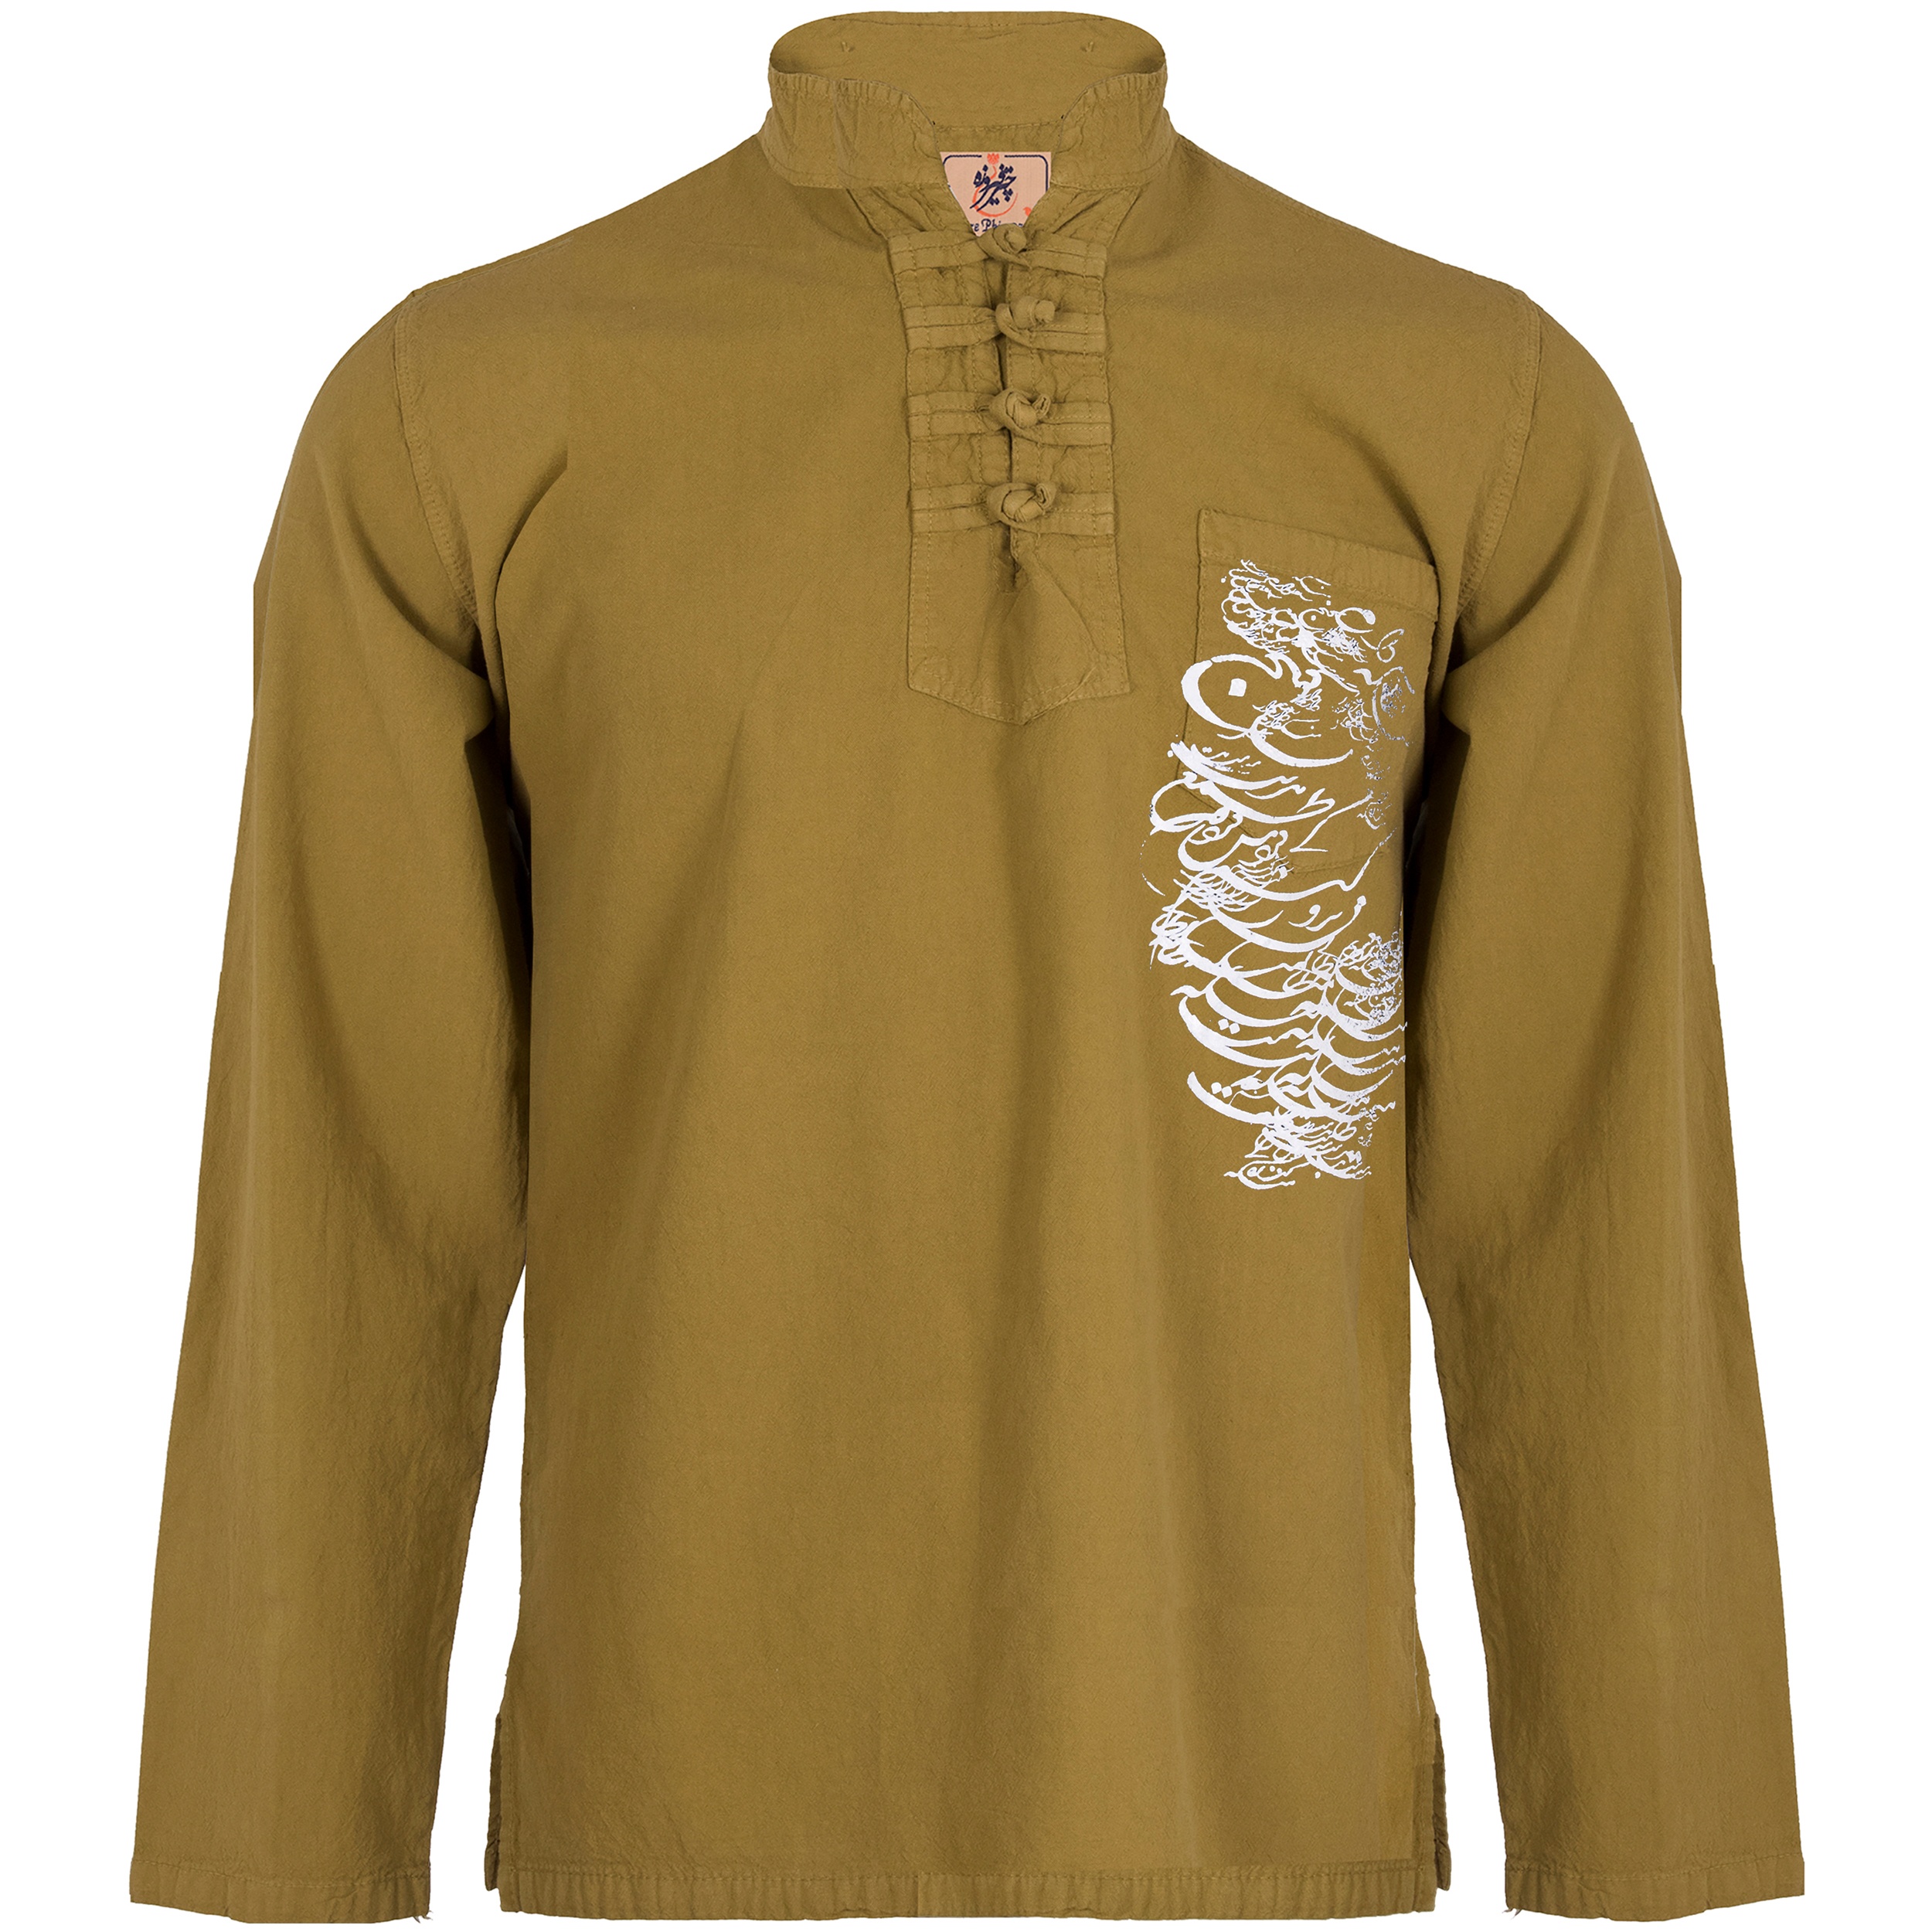 پیراهن مردانه چترفیروزه مدل چهارگره چاپی کد 8